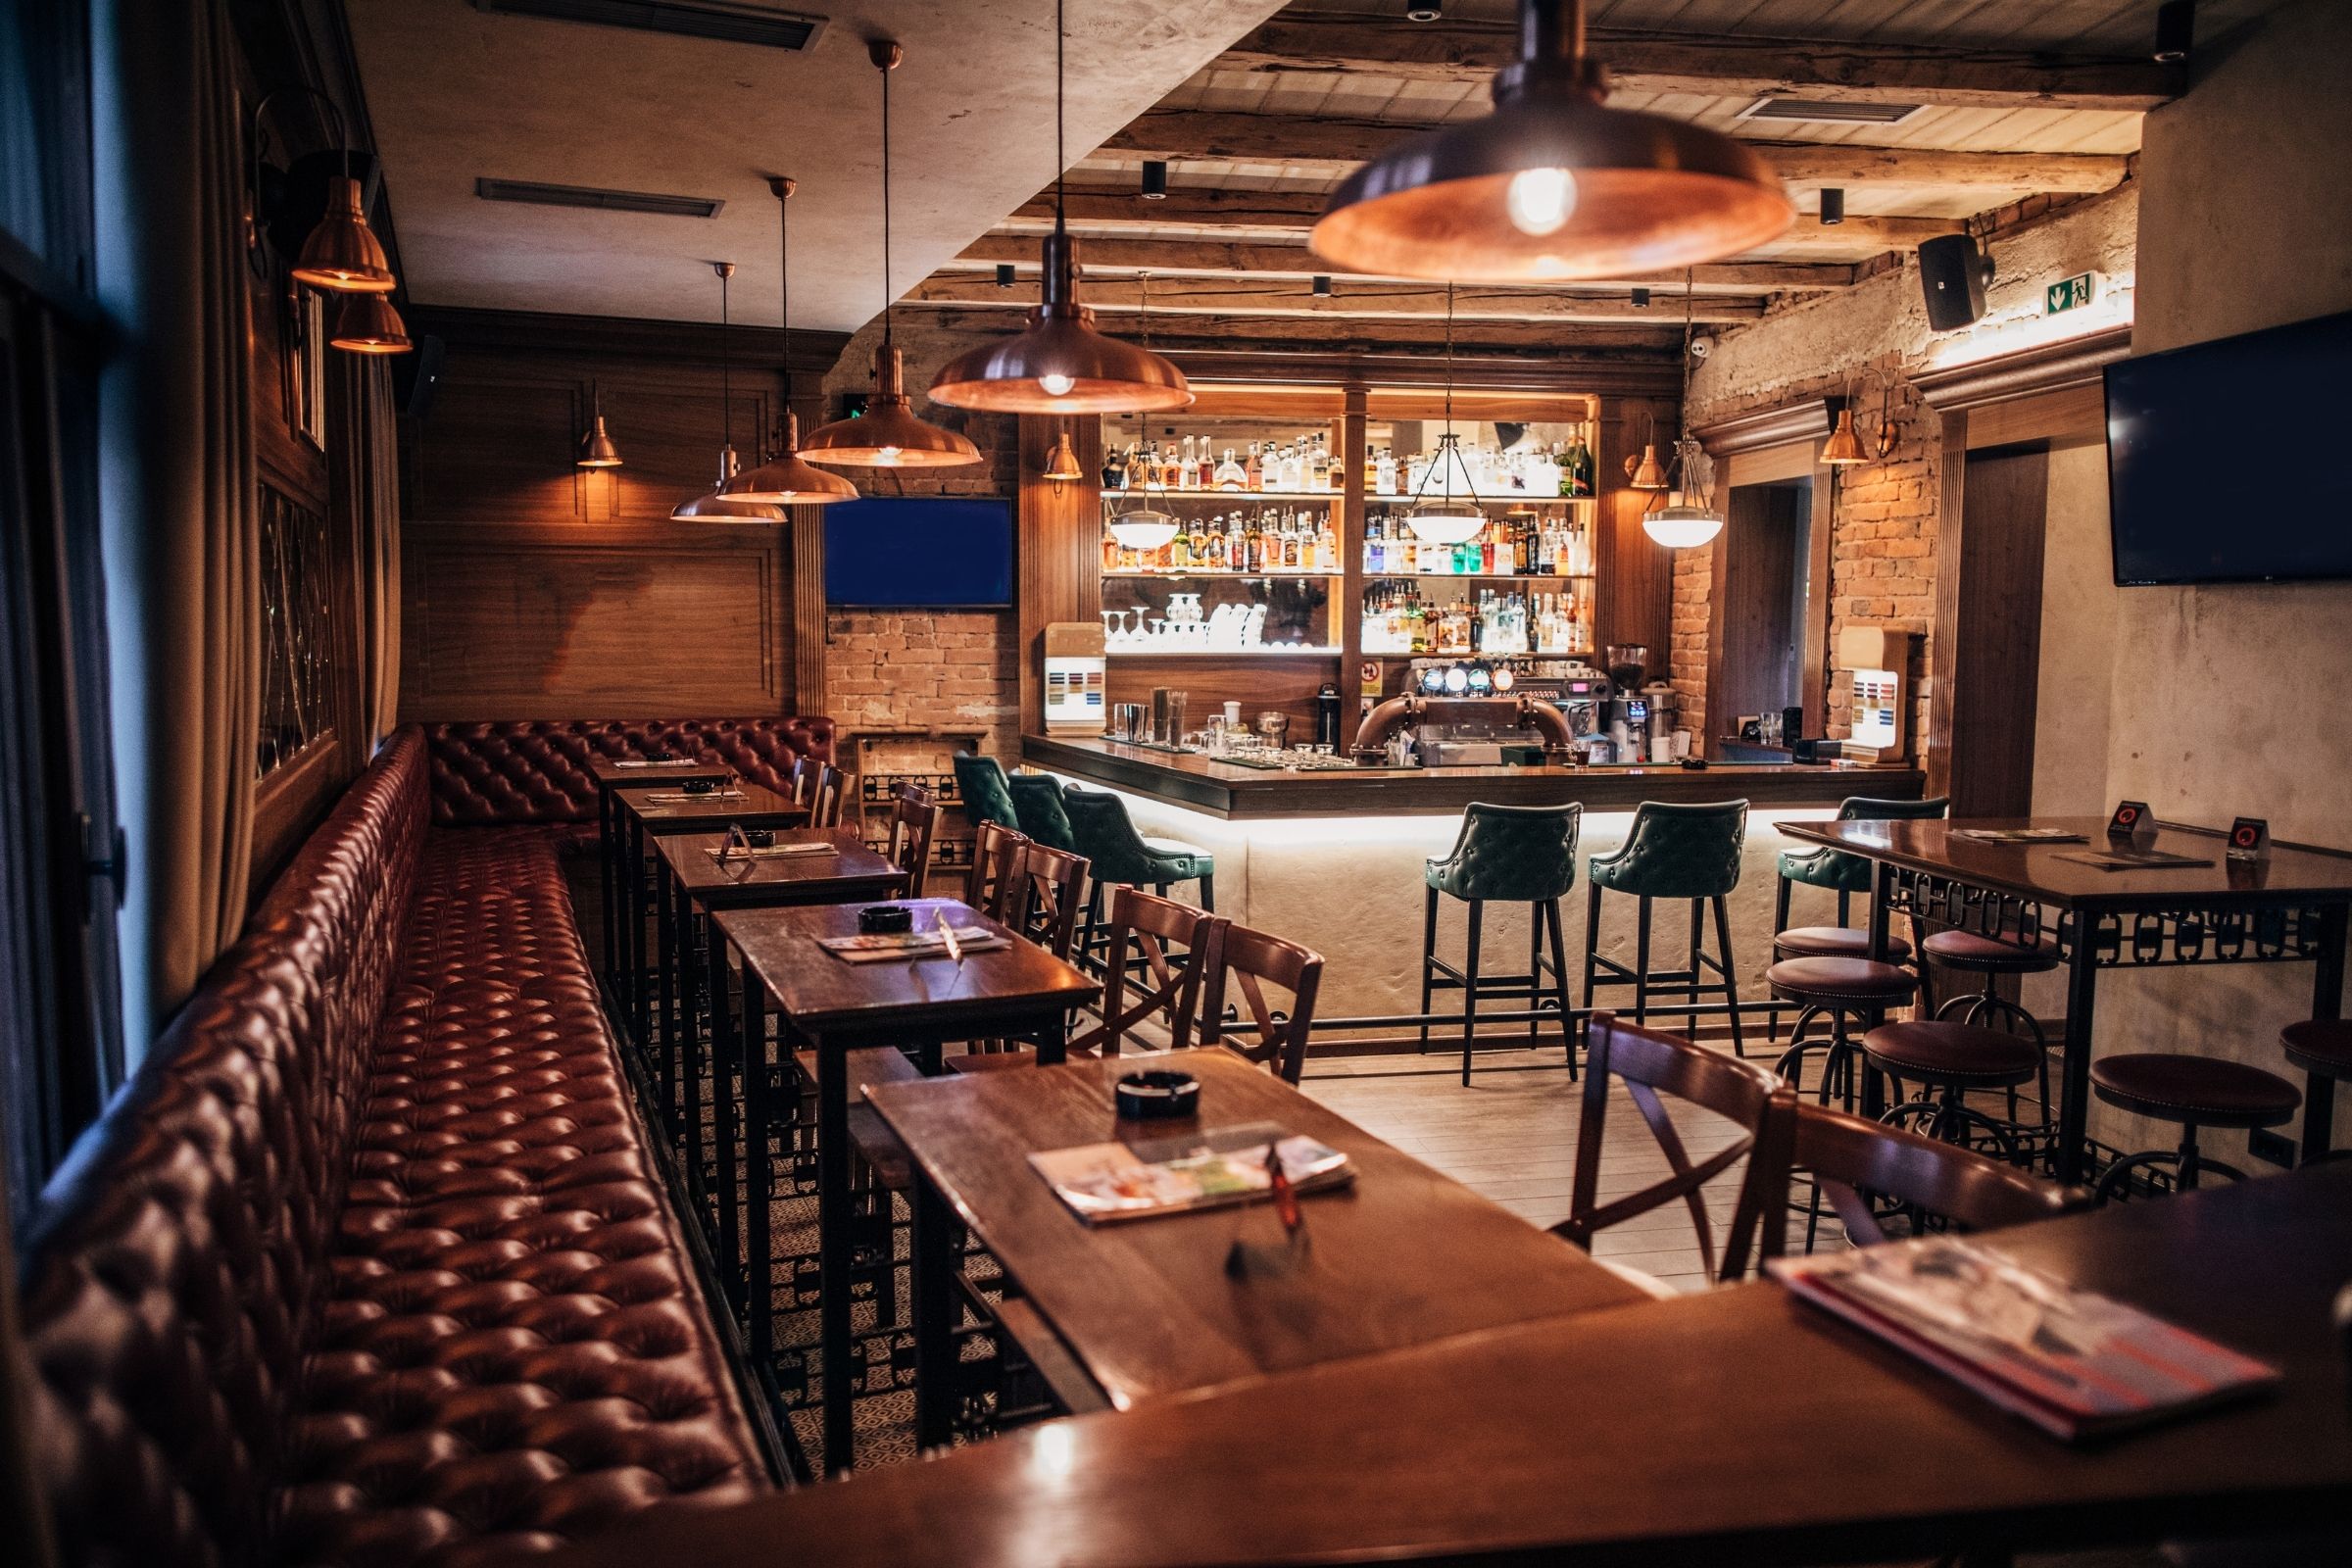 Rząd Irlandii podejmie decyzję kiedy nastąpi otwarcie restauracji i pubów w pomieszczeniach